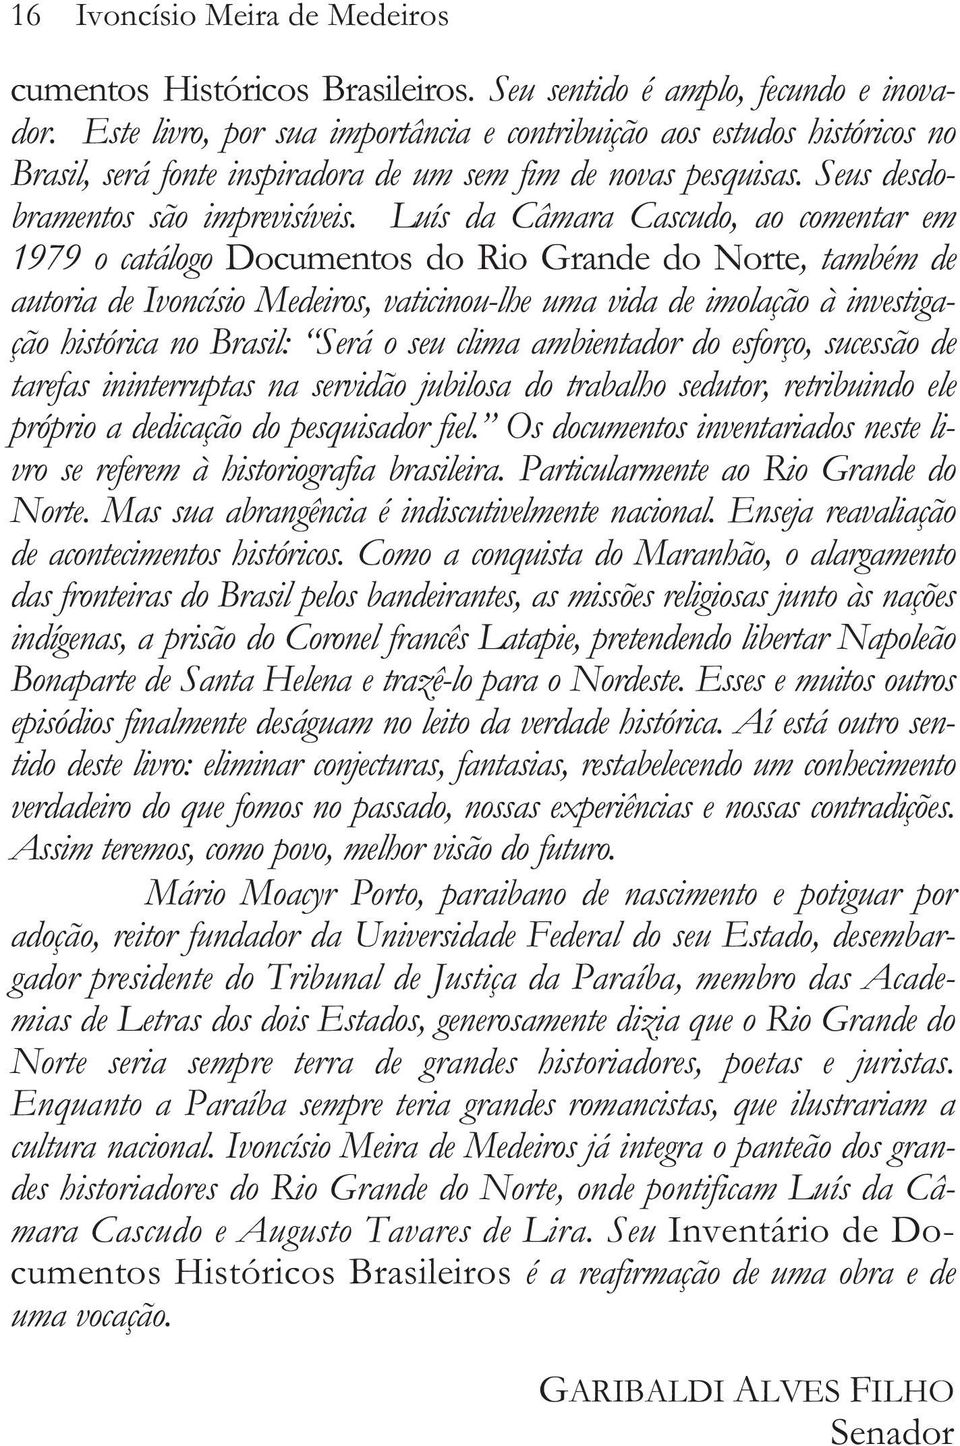 Luís da Câmara Cascudo, ao comentar em 1979 o catálogo Documentos do Rio Grande do Norte, também de autoria de Ivoncísio Medeiros, vaticinou-lhe uma vida de imolação à investigação histórica no